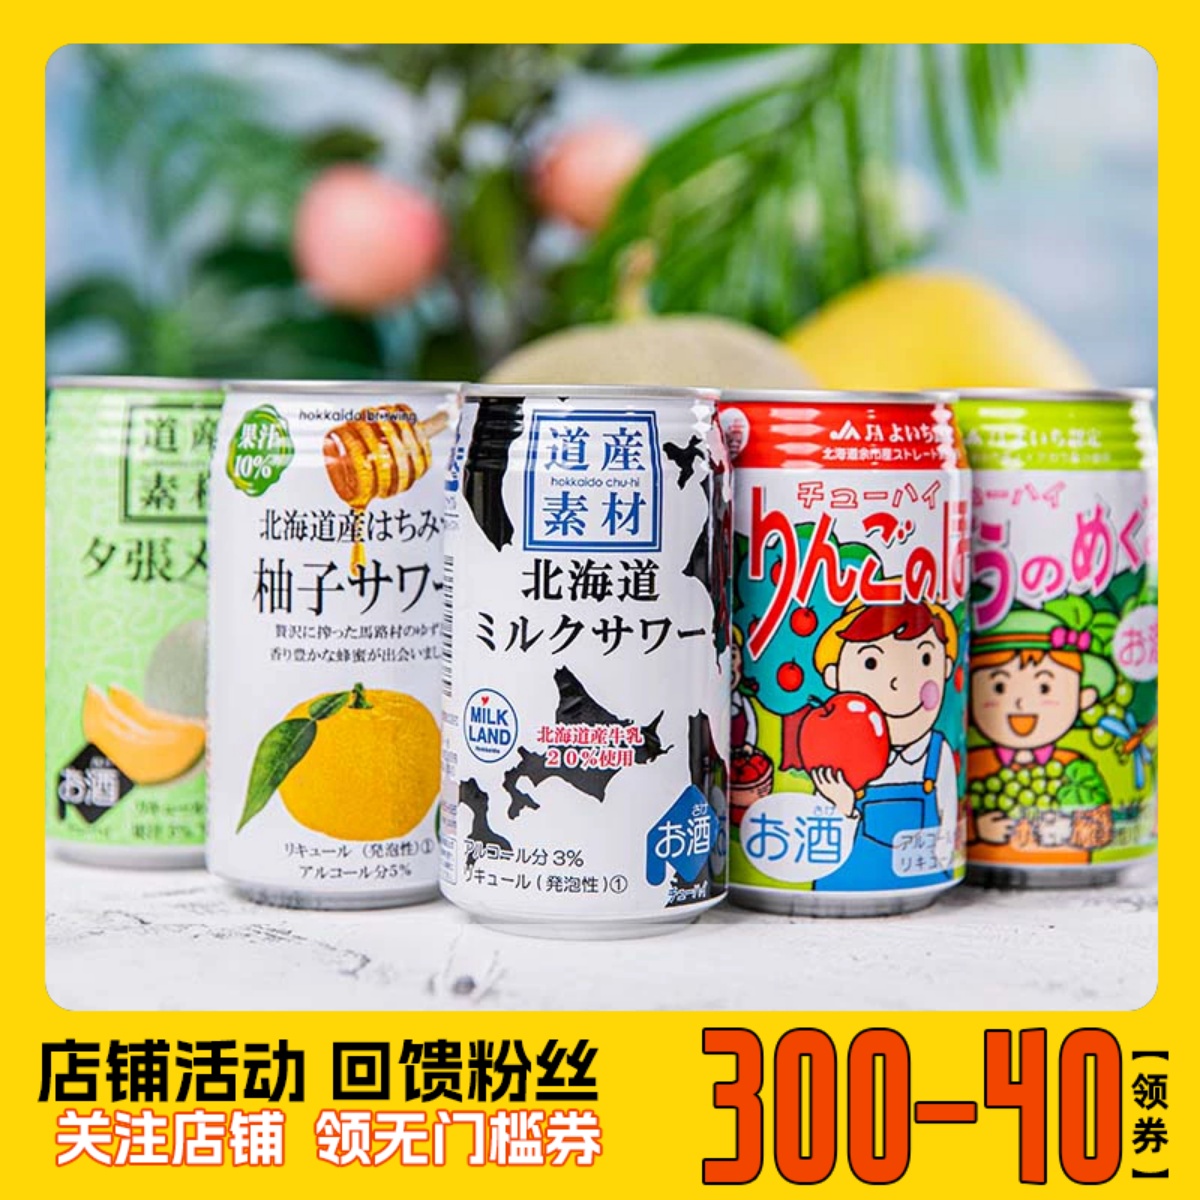 临期航玖汇日本北海道小樽知嗨牛奶沙瓦蜜瓜水果味精酿果酒350ml